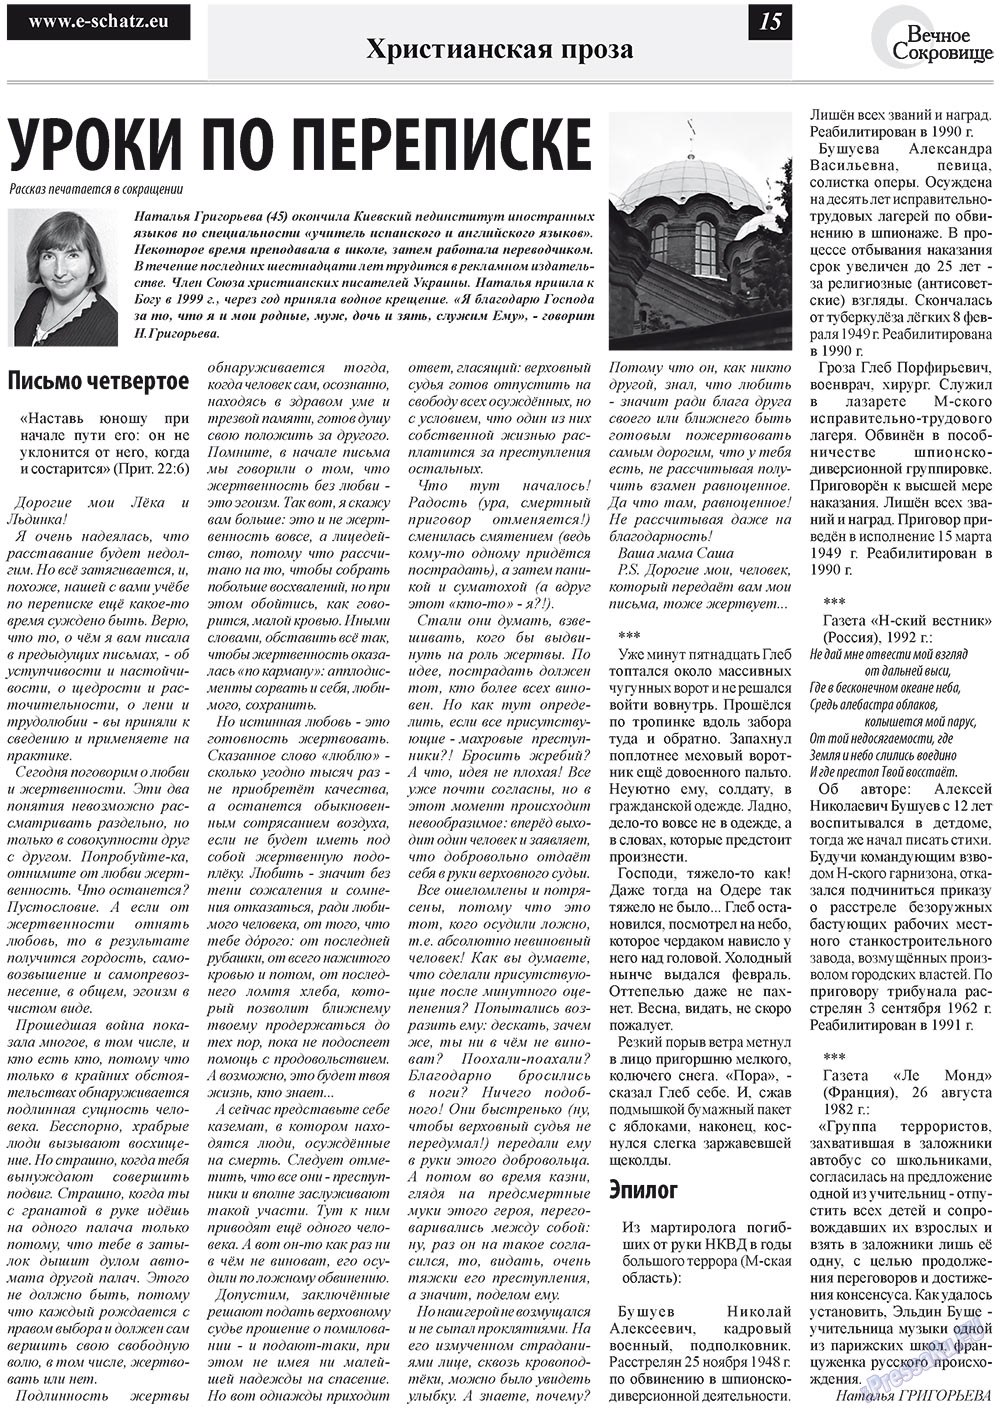 Вечное сокровище, газета. 2012 №1 стр.15